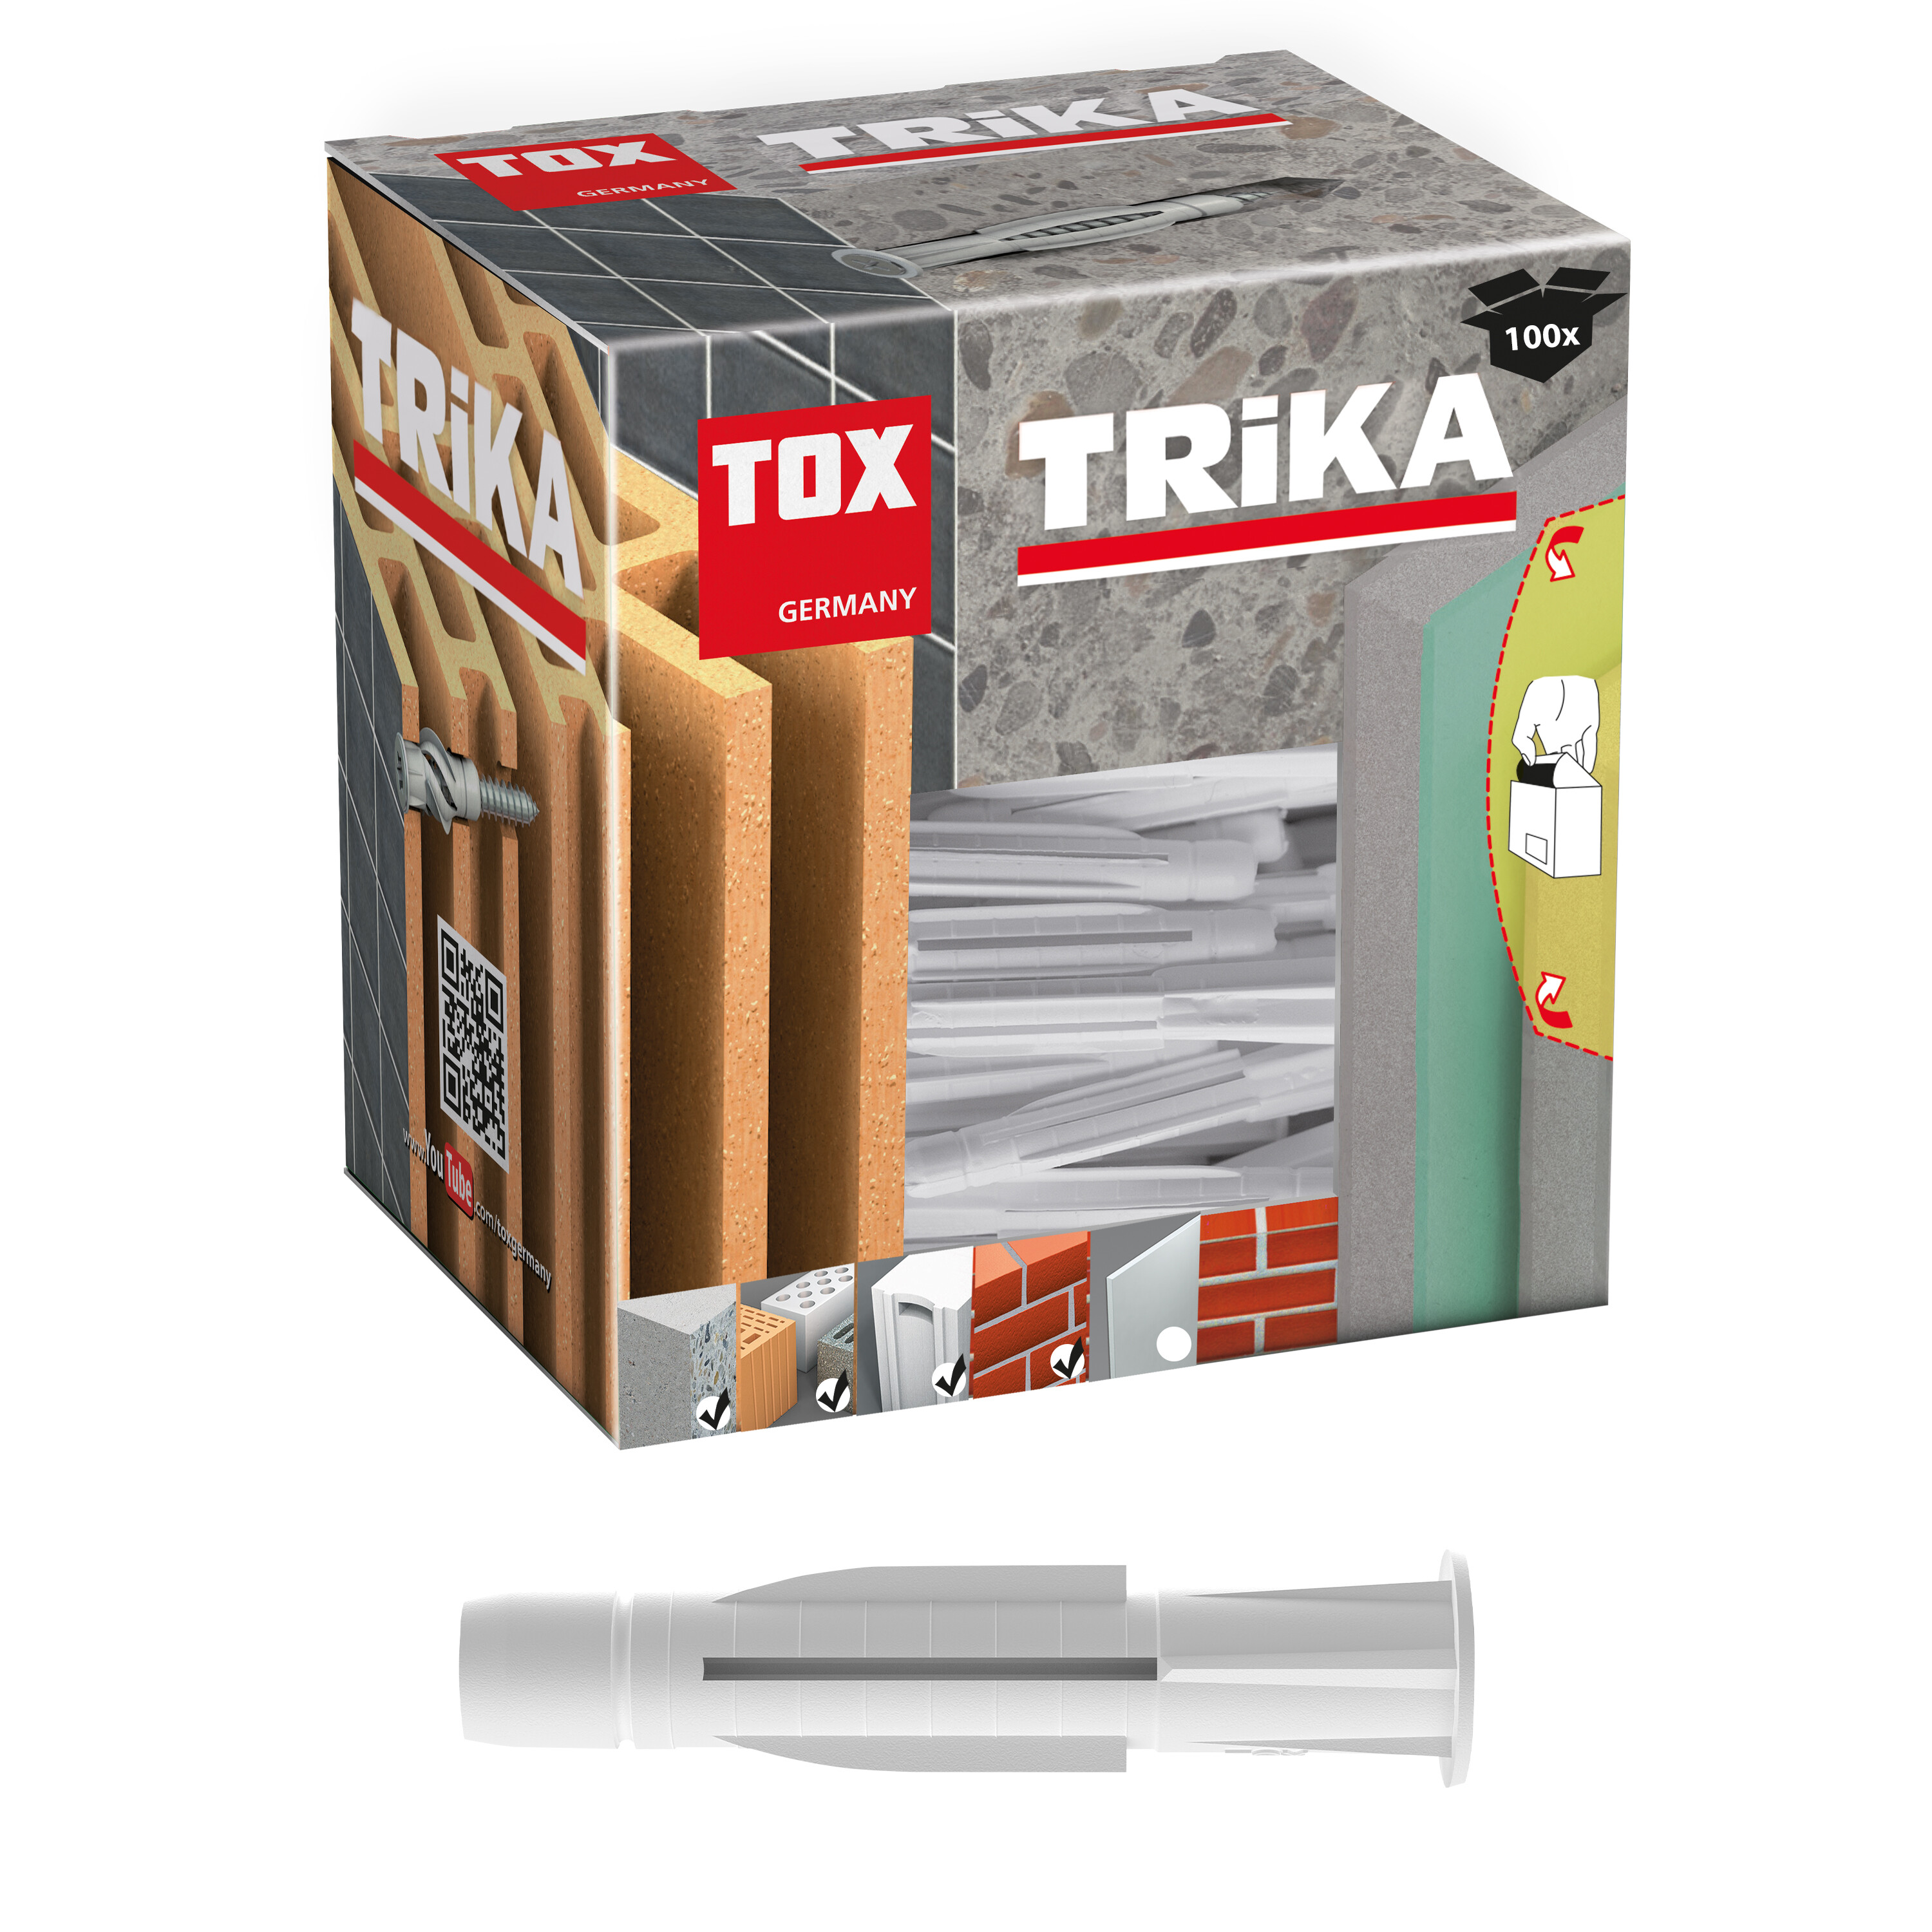 TOX Allzweckdübel TRIKA 6x51 mm, zuverlässige Befestigung in fast allen  Baustoffen, einfache Montage, mitdrehsicher und Dübelkappe schont die  Oberfläche, 100 Stück im Karton, 011100061